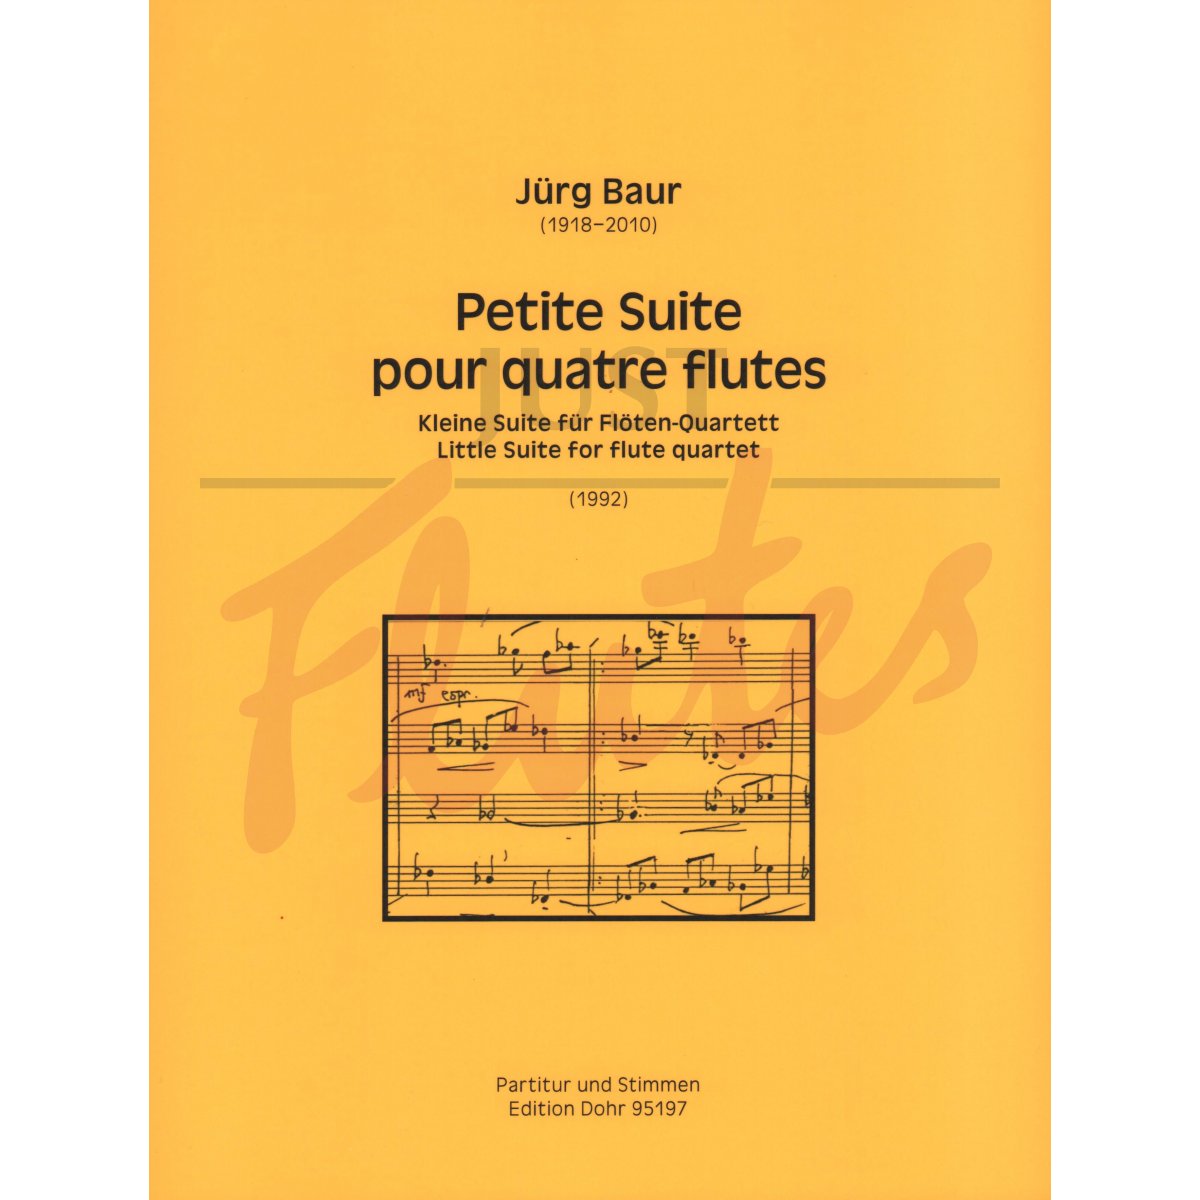 Little Suite for Flute Quartet